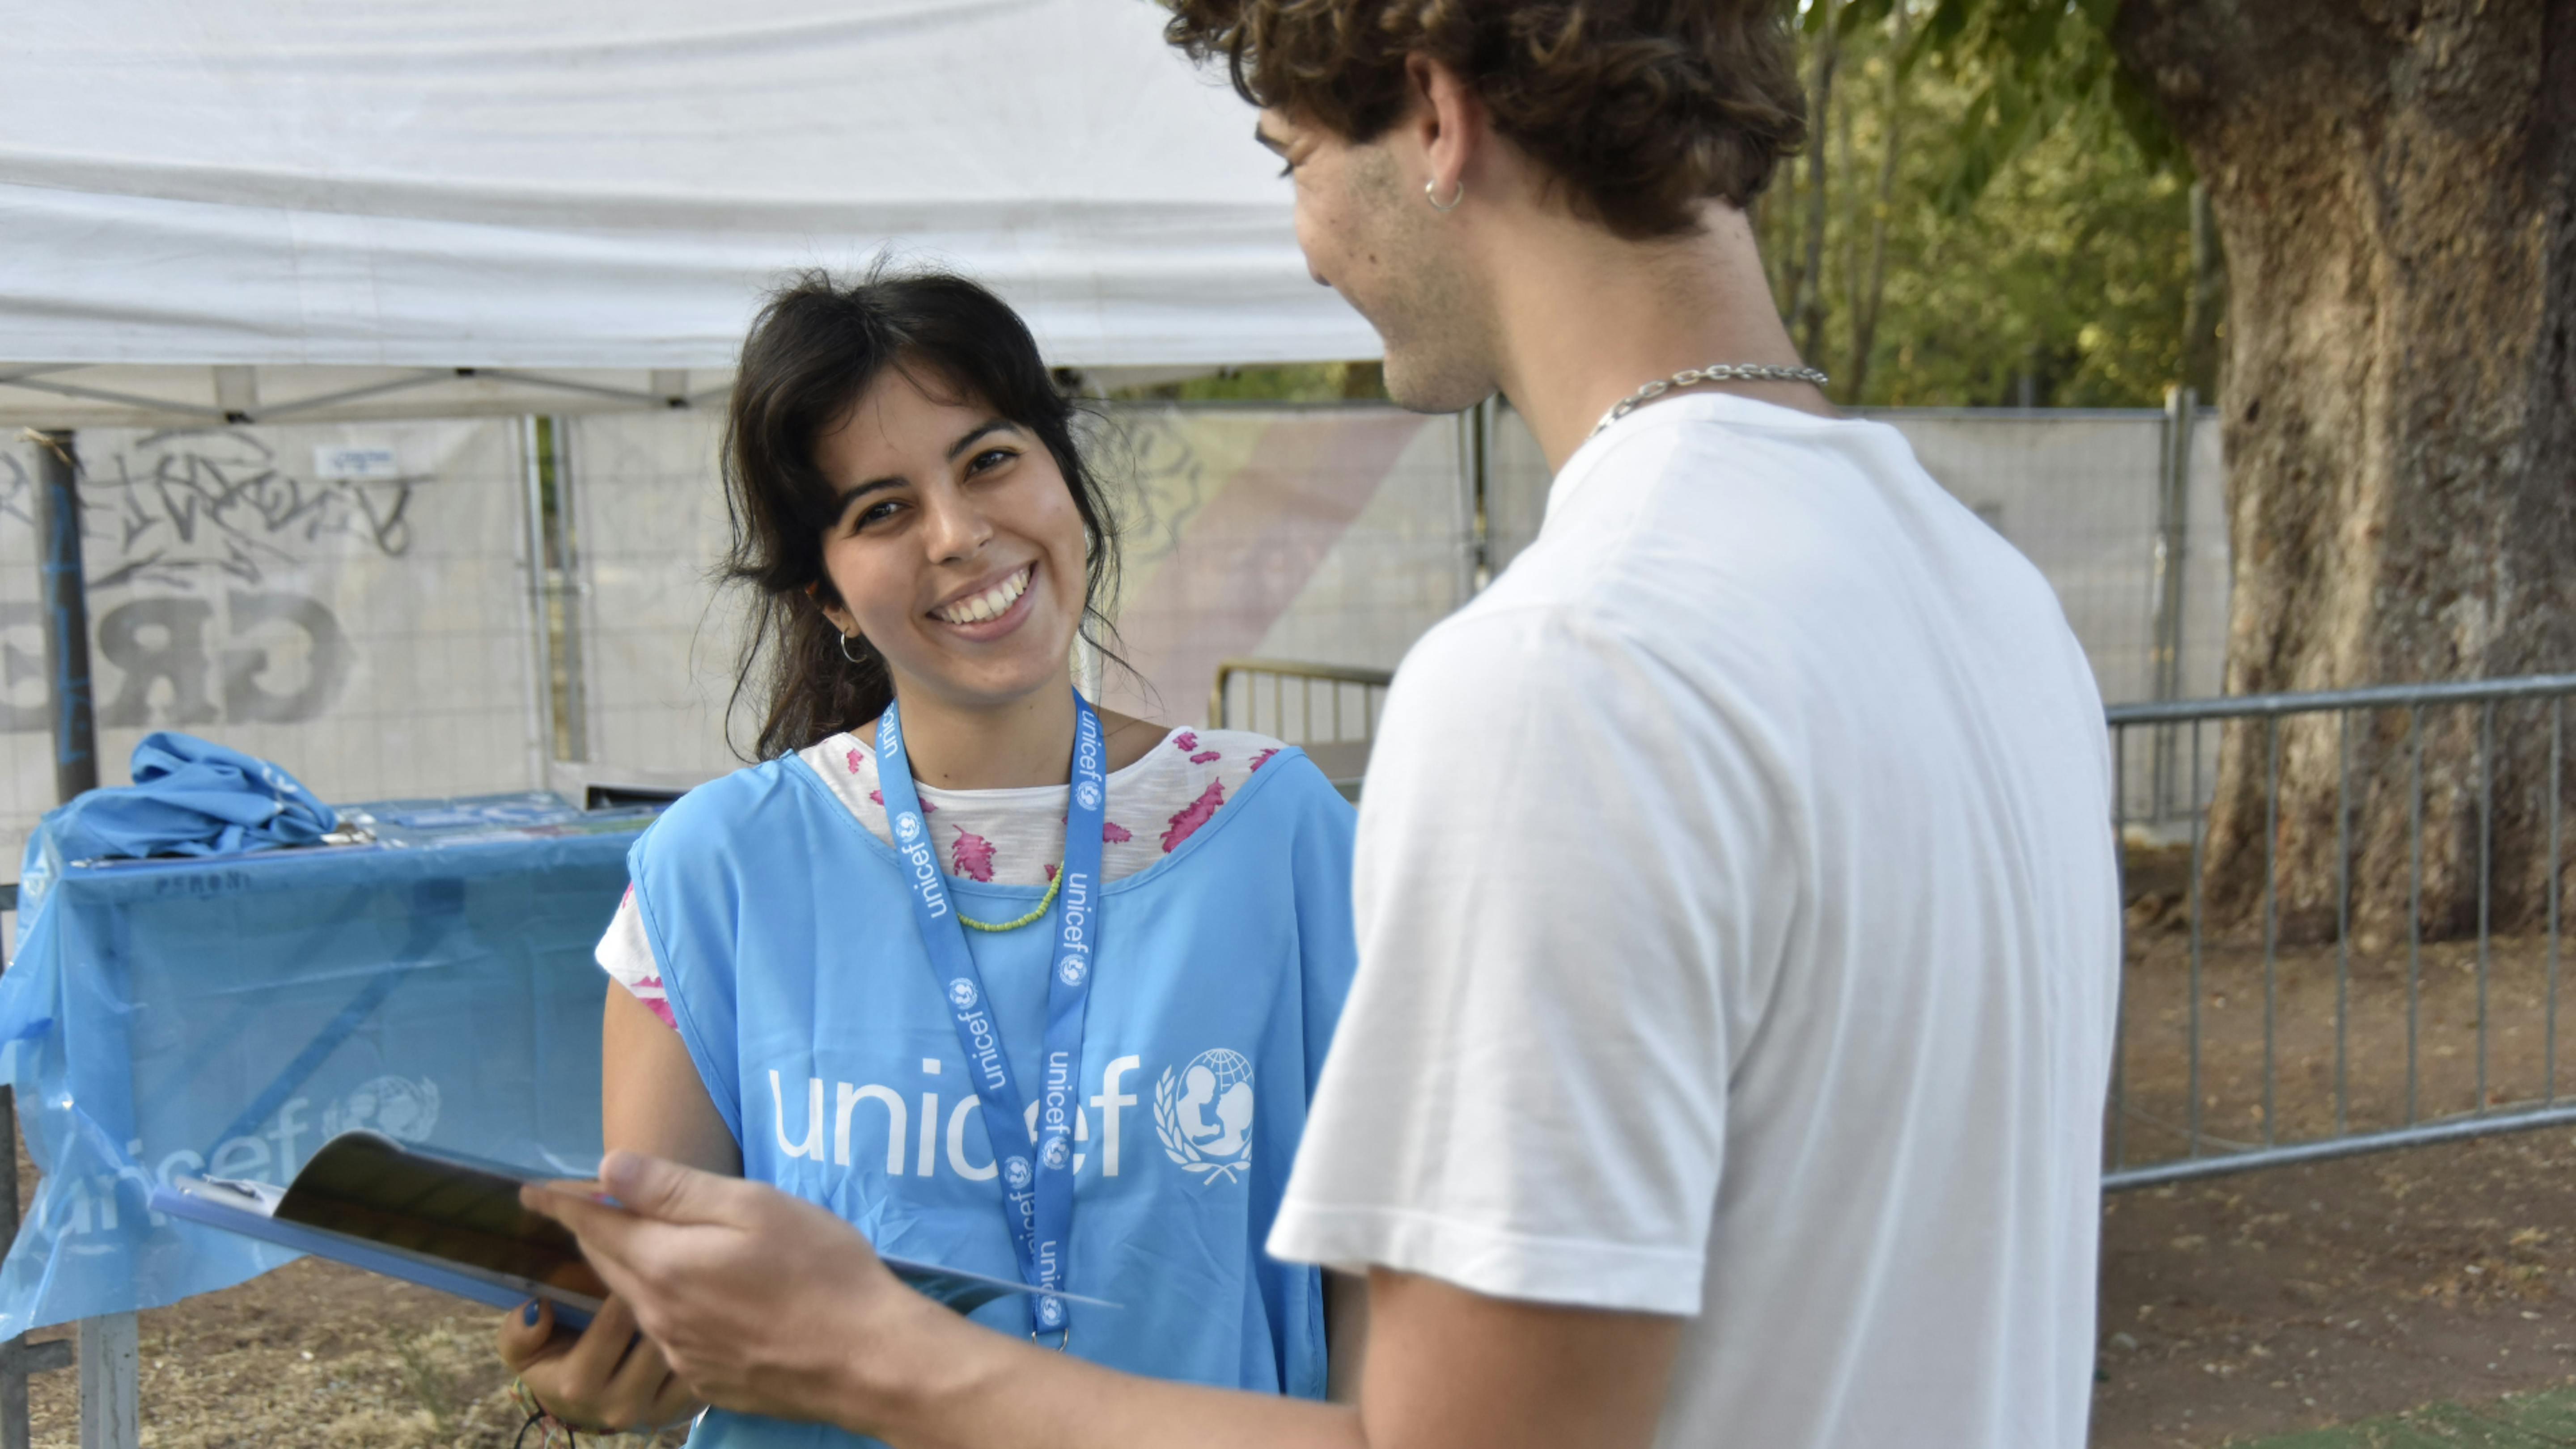 Face to Face - ragazza espone i programmi di UNICEF ad un passante. Credit: Mirko Radi